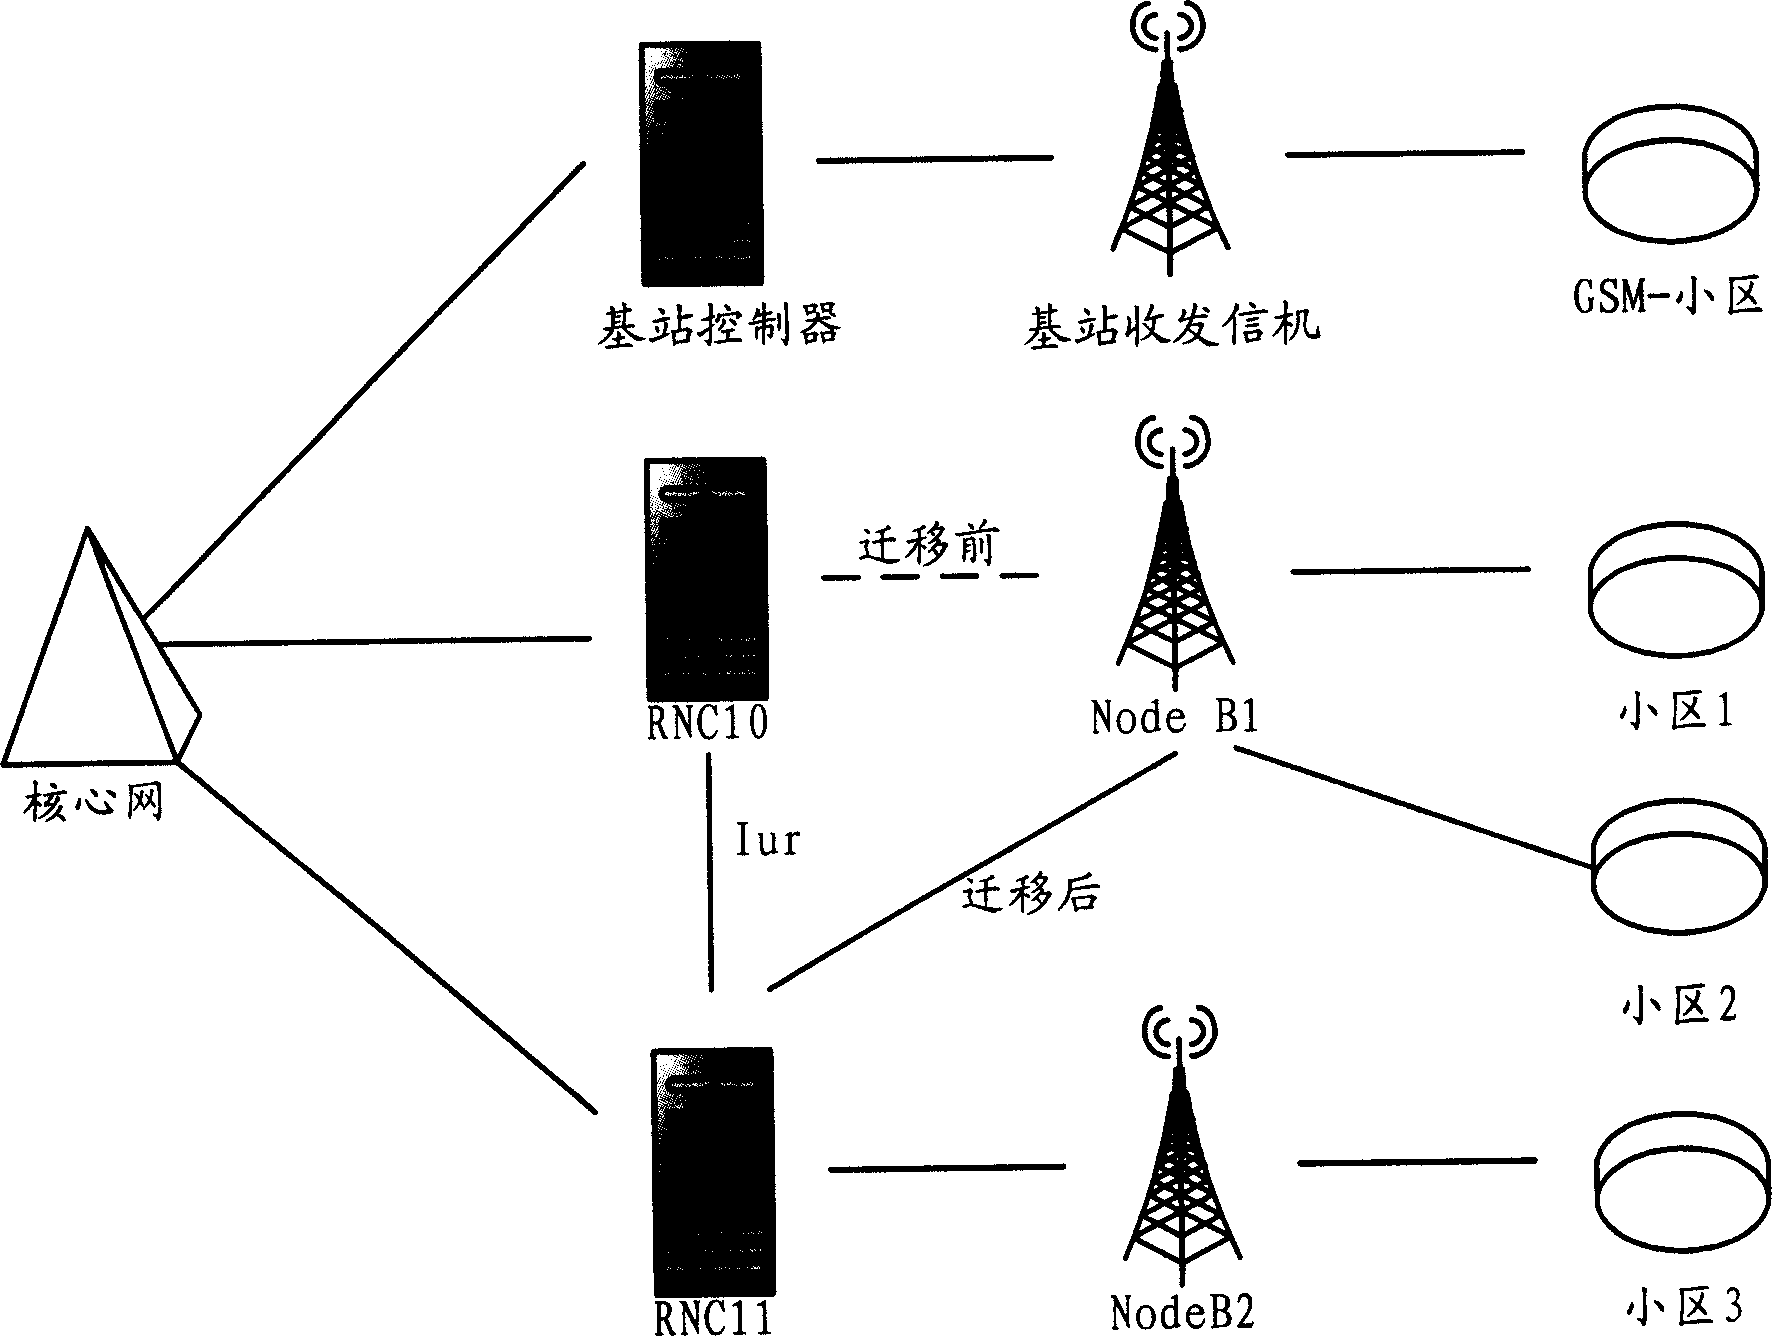 Method and system for base station node emigration